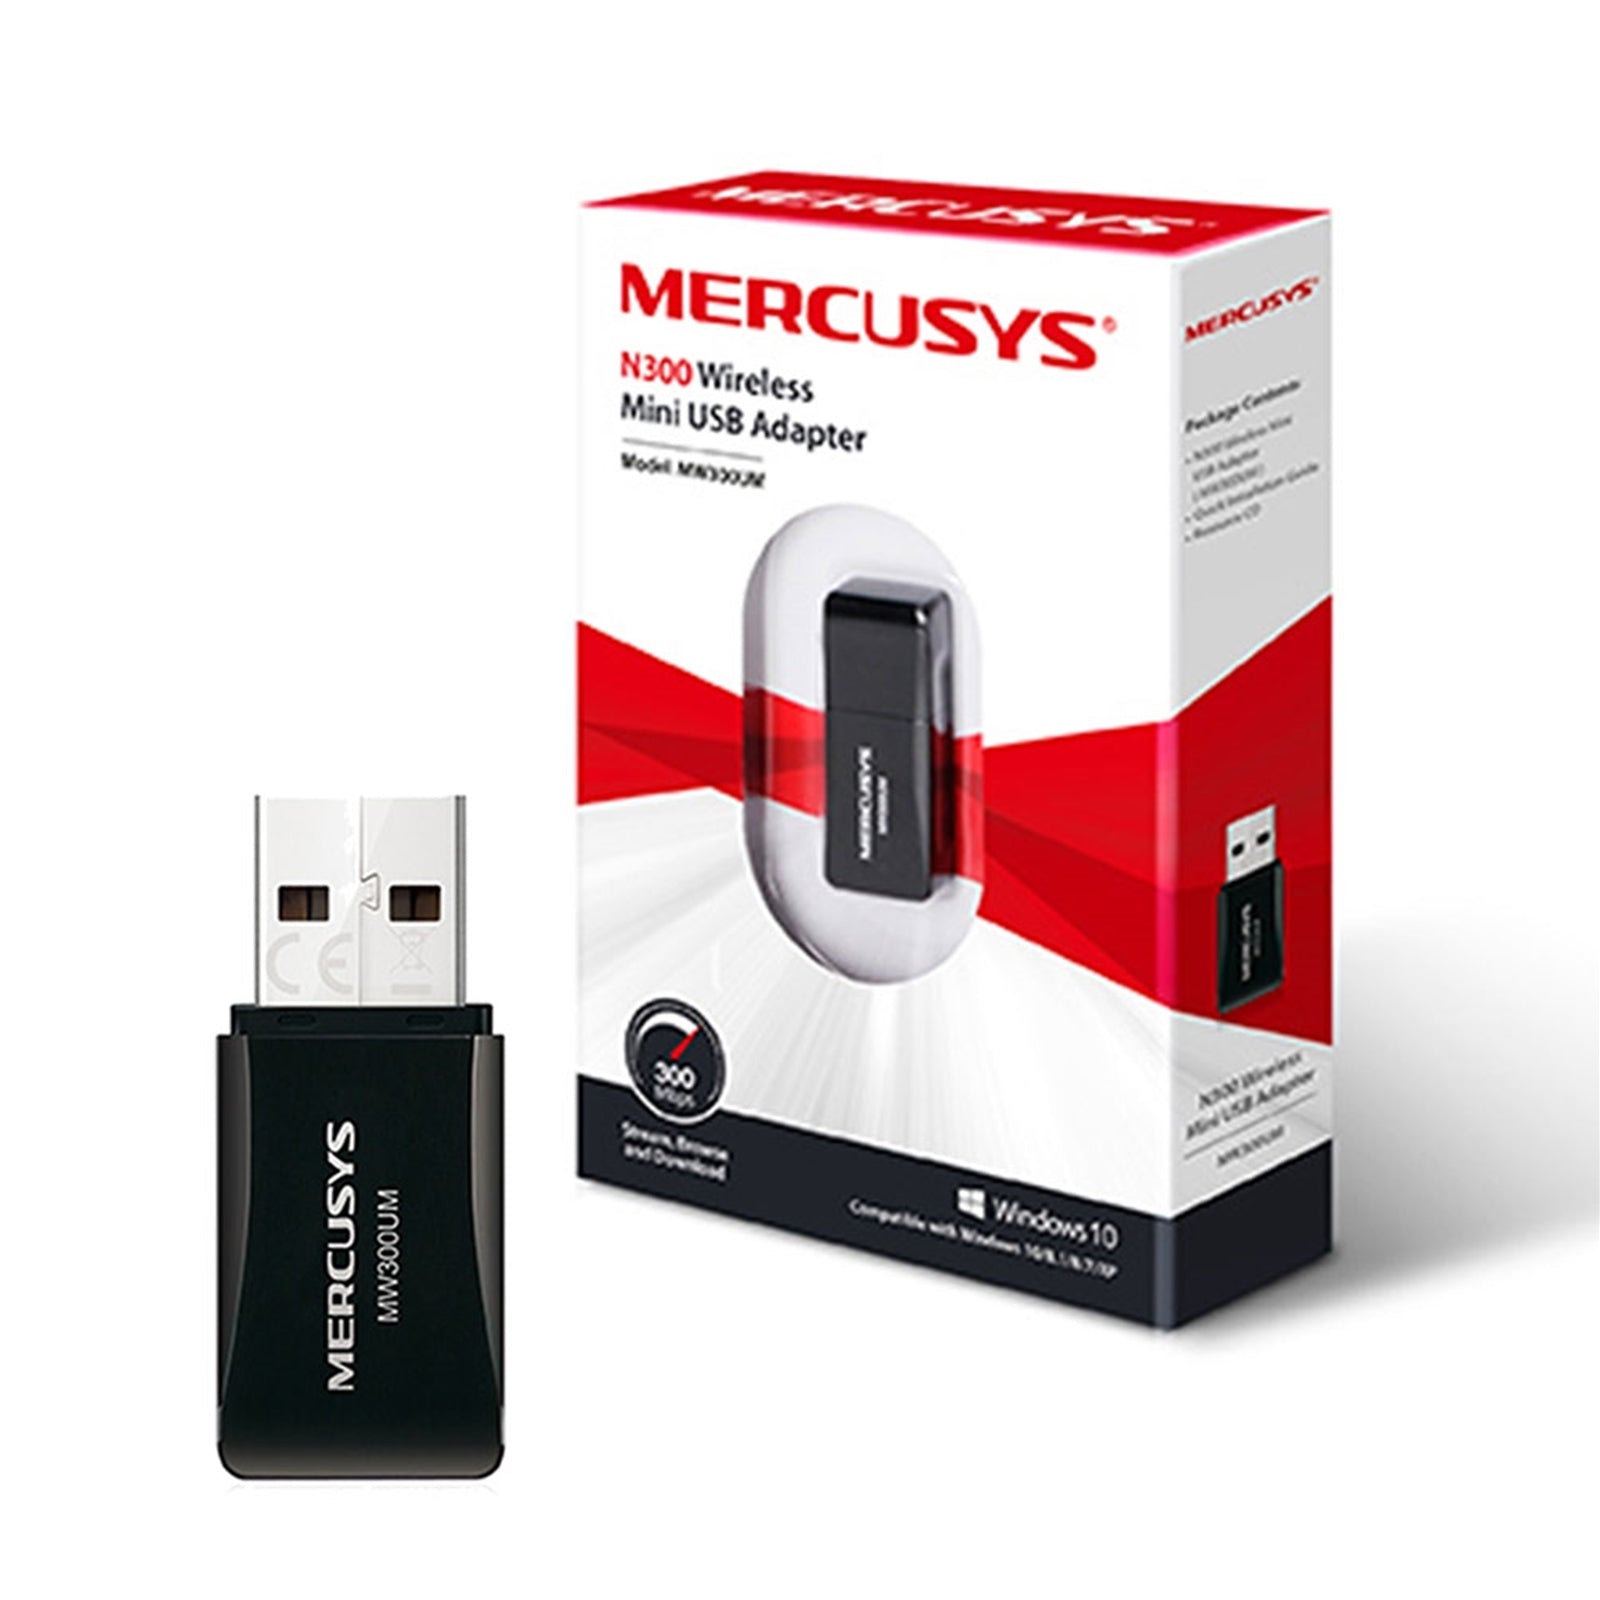 Mercusys MW300UM N300 300Mbps Wireless Mini USB Adapter